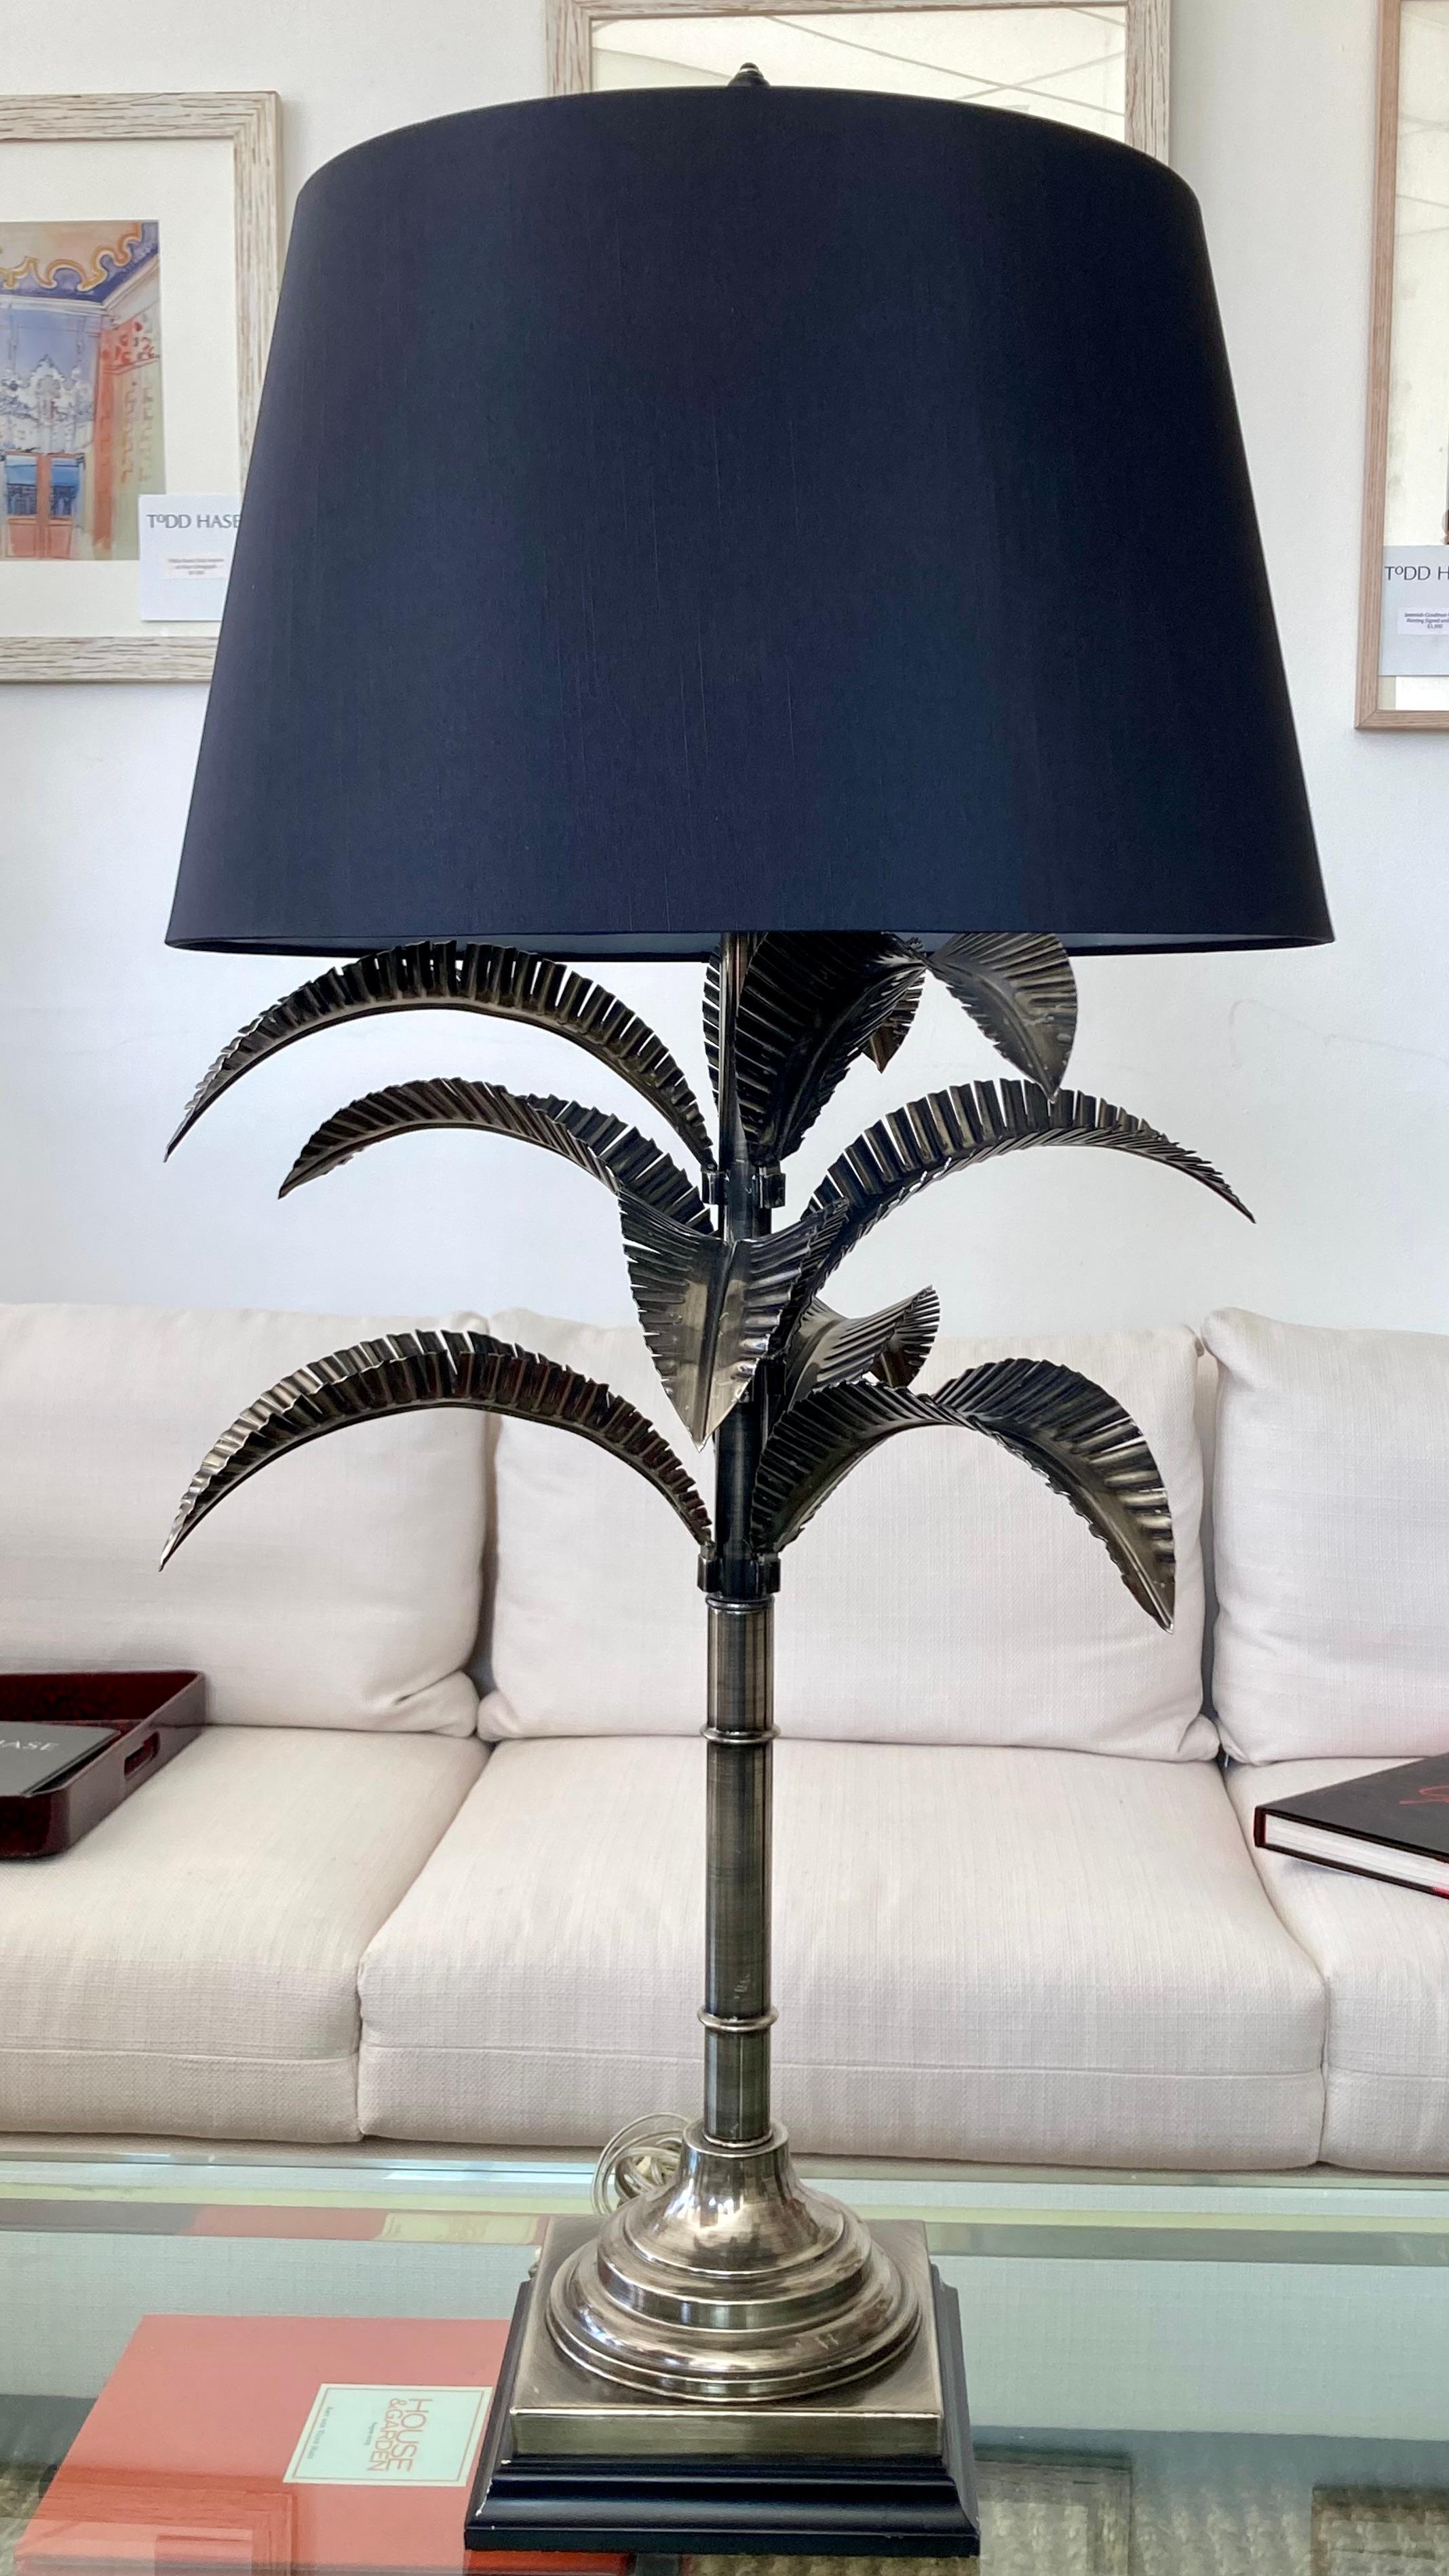 Schöne klassische Jansen Metall Palme Tischlampe mit originalem Endstück und Schirm. Eine großartige Ergänzung für Ihre von Jansen inspirierten Innenräume und Zimmer.